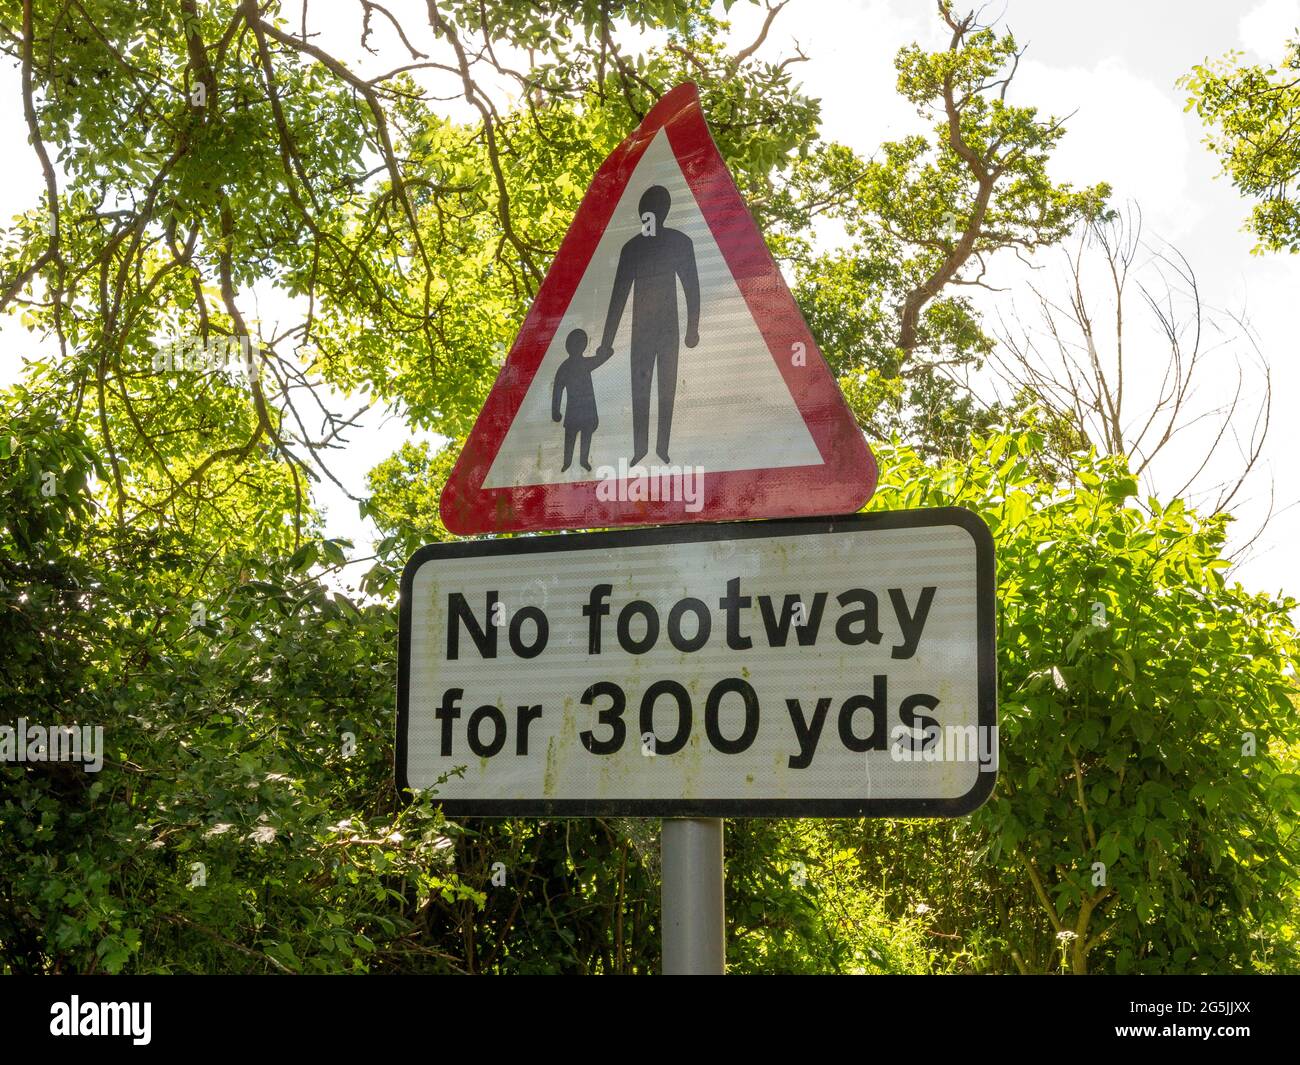 Ein Straßenschild, das anzeigt, dass es für 300 Yds keinen Fußraum gibt, mit Wörtern und einem Erwachsenen- und Kindersymbol in einem roten Warndreieck Stockfoto